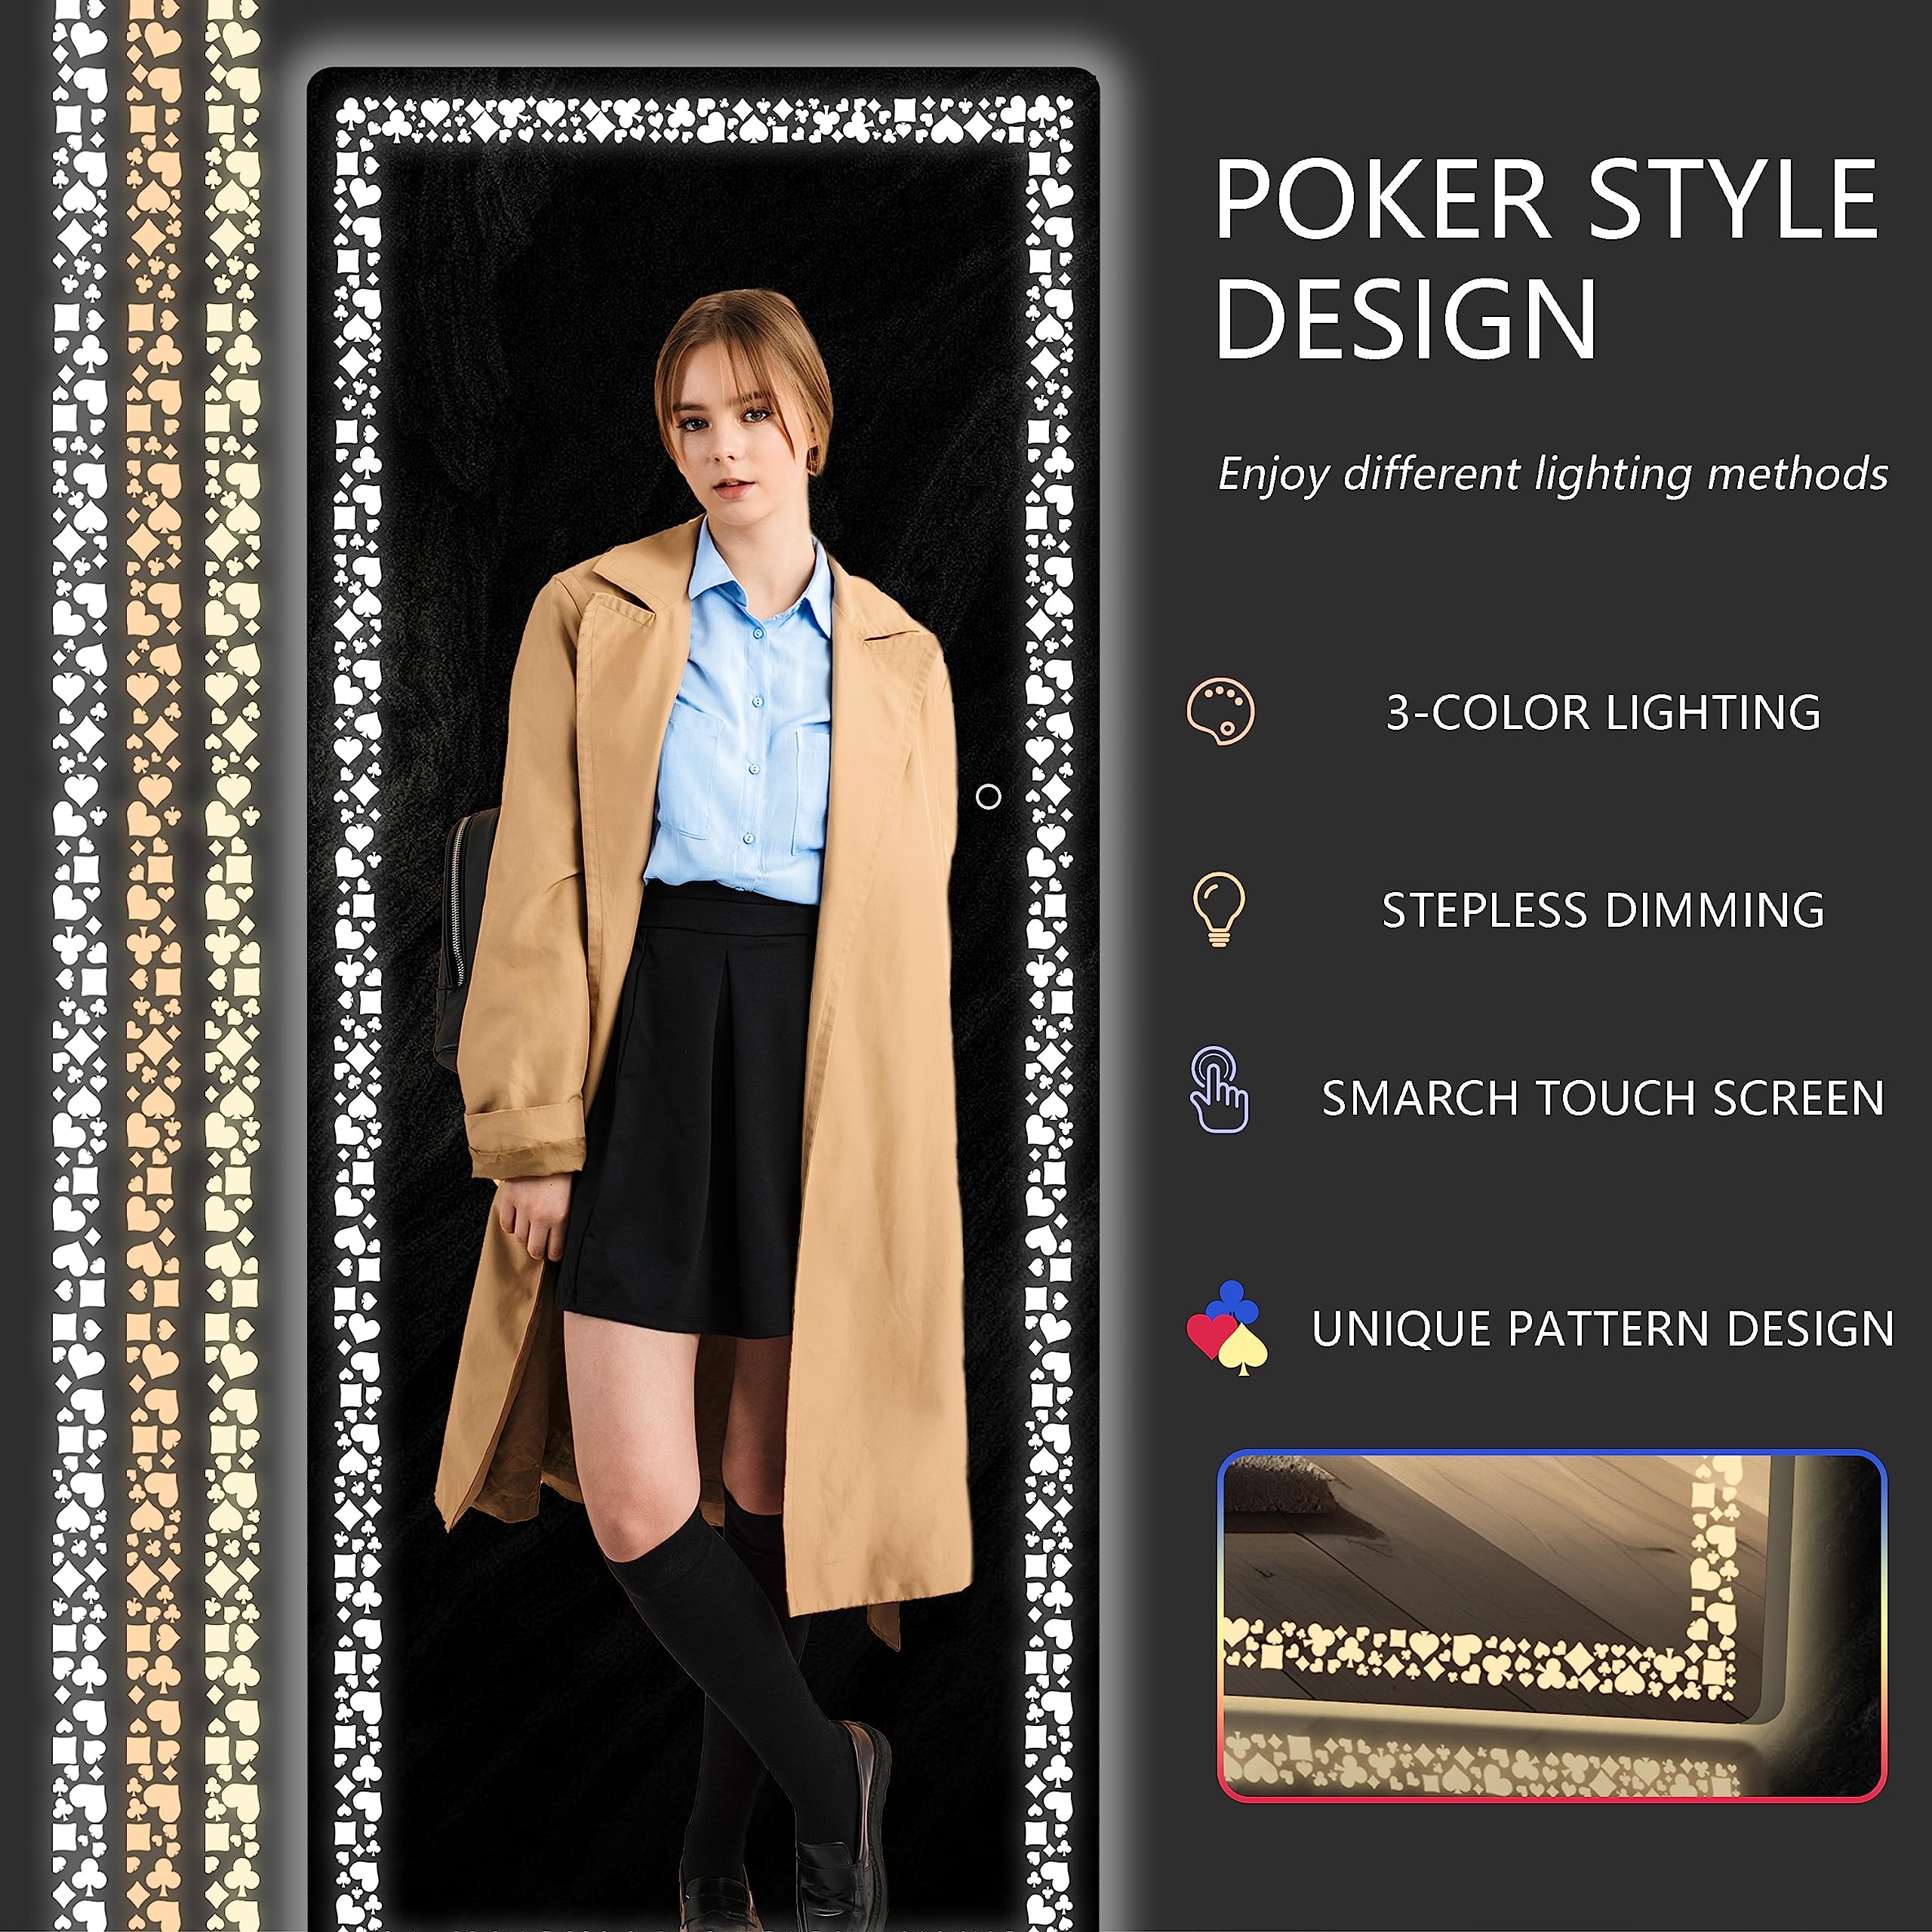 White 63"x22" LED Full-Length Mirror, Poker Flower Pattern